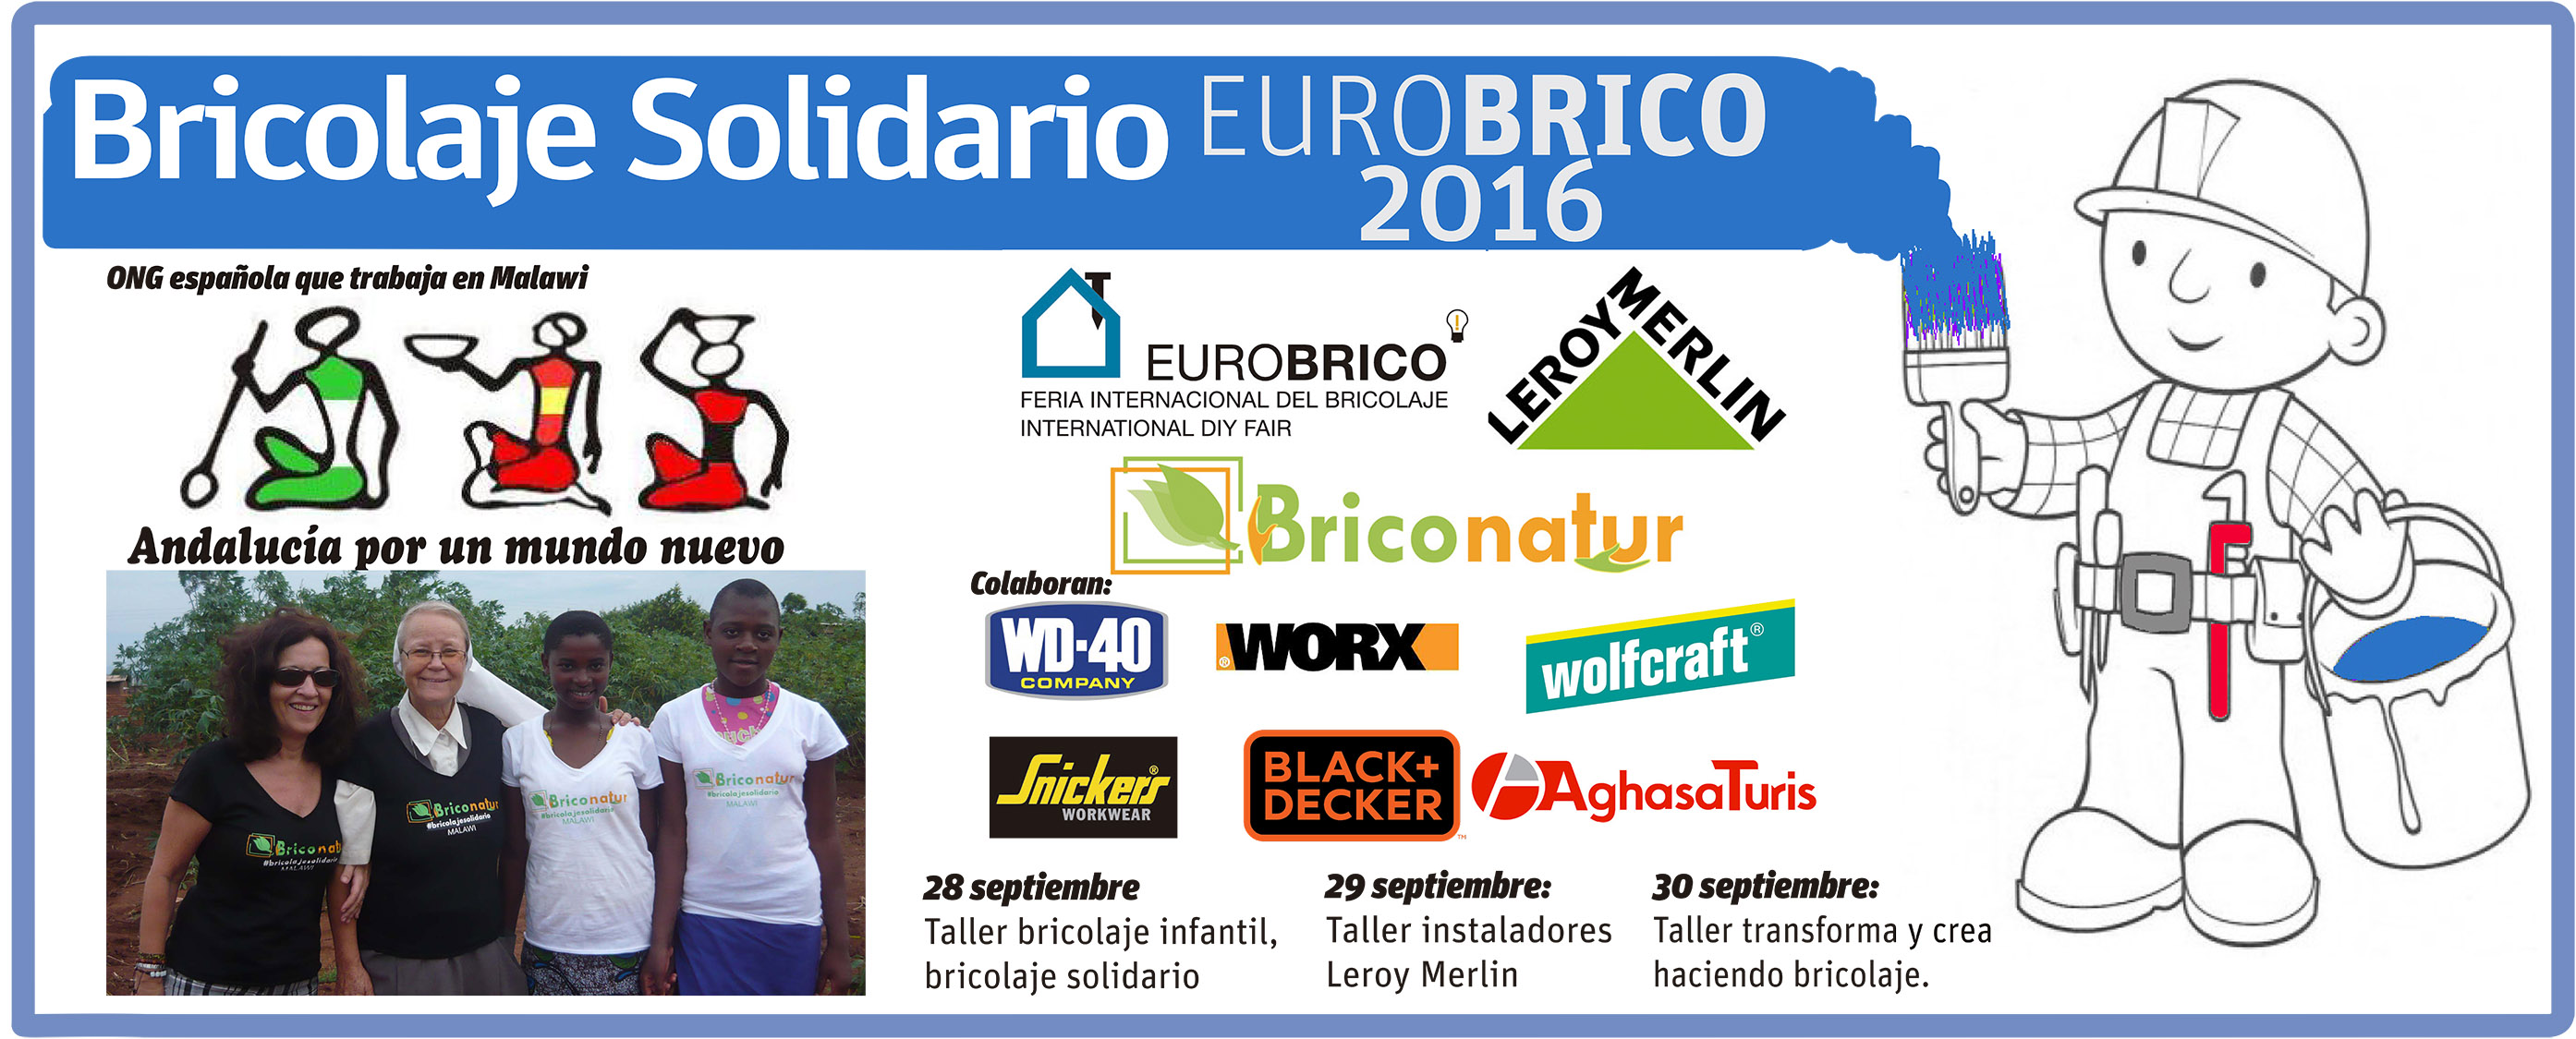 You are currently viewing Bricolaje solidario y talleres para instaladores, im Programm der Aktivitäten der Eurobrico